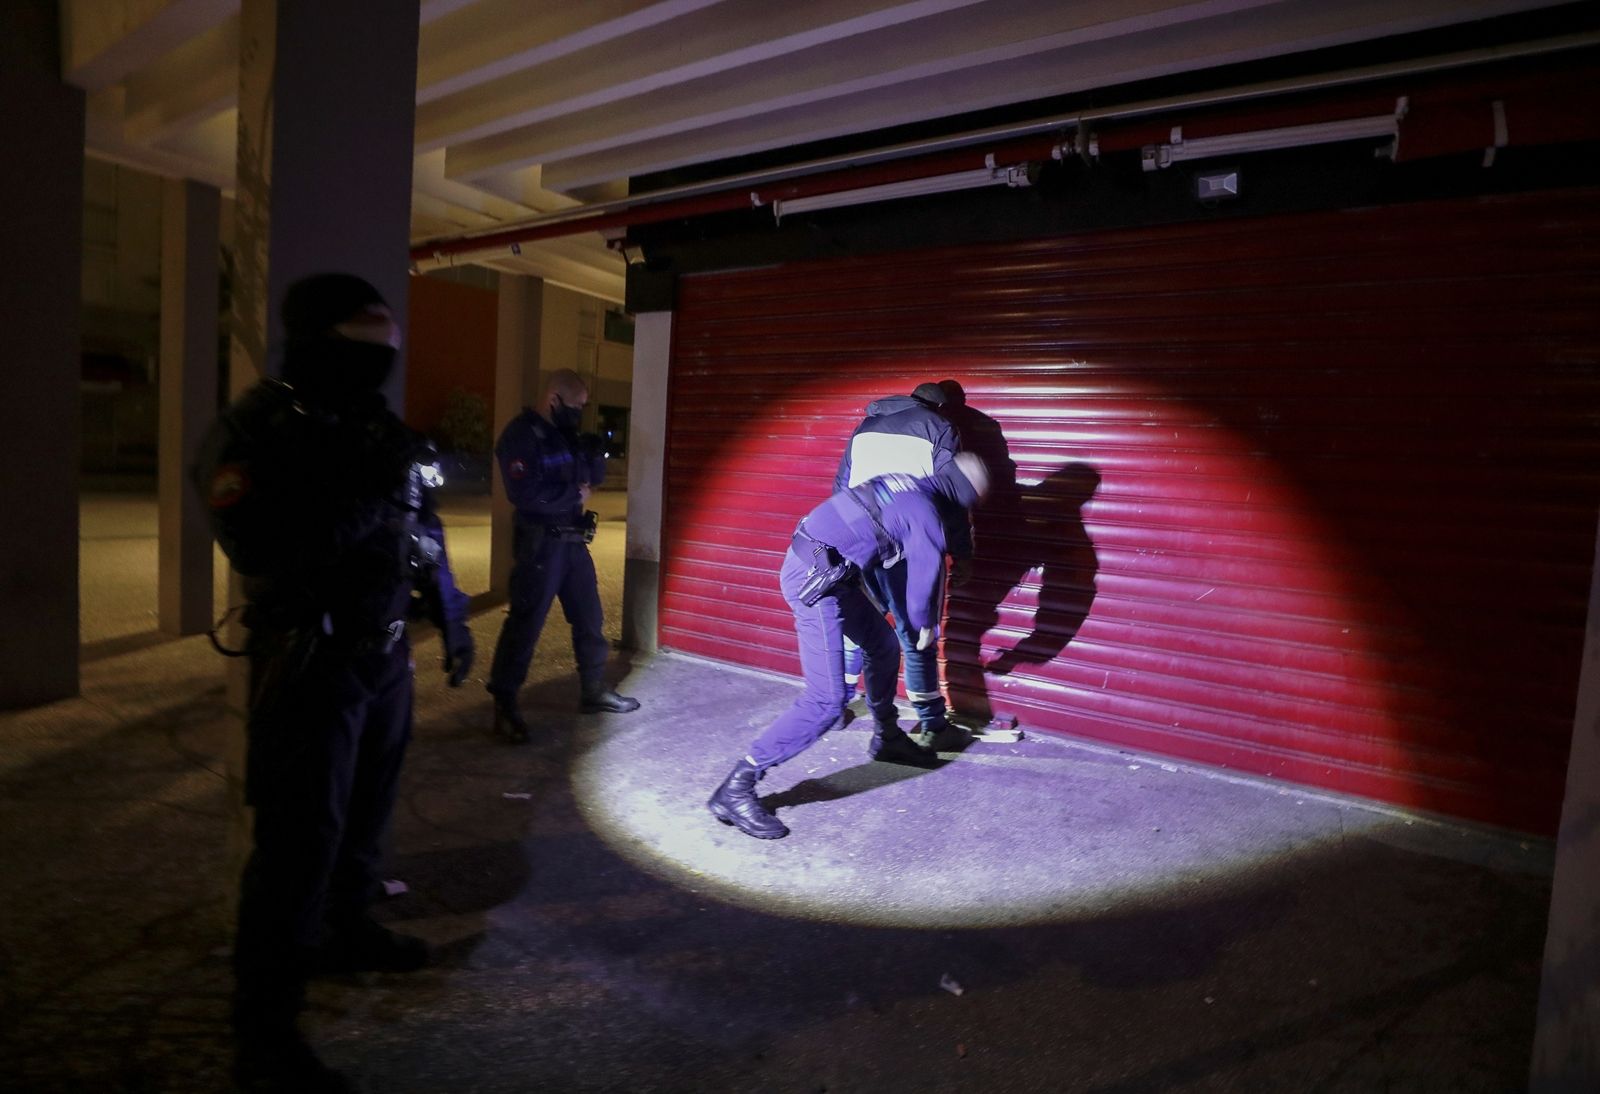 REUTERS-ชาวฝรั่งเศสถูกตำรวจค้นตัวหลังฝ่าฝืนคำสั่งเคอร์ฟิวที่เมืองนีซ ช่วงไวรัสโคโรนา โควิด-19 COVID ระบาด.JPG